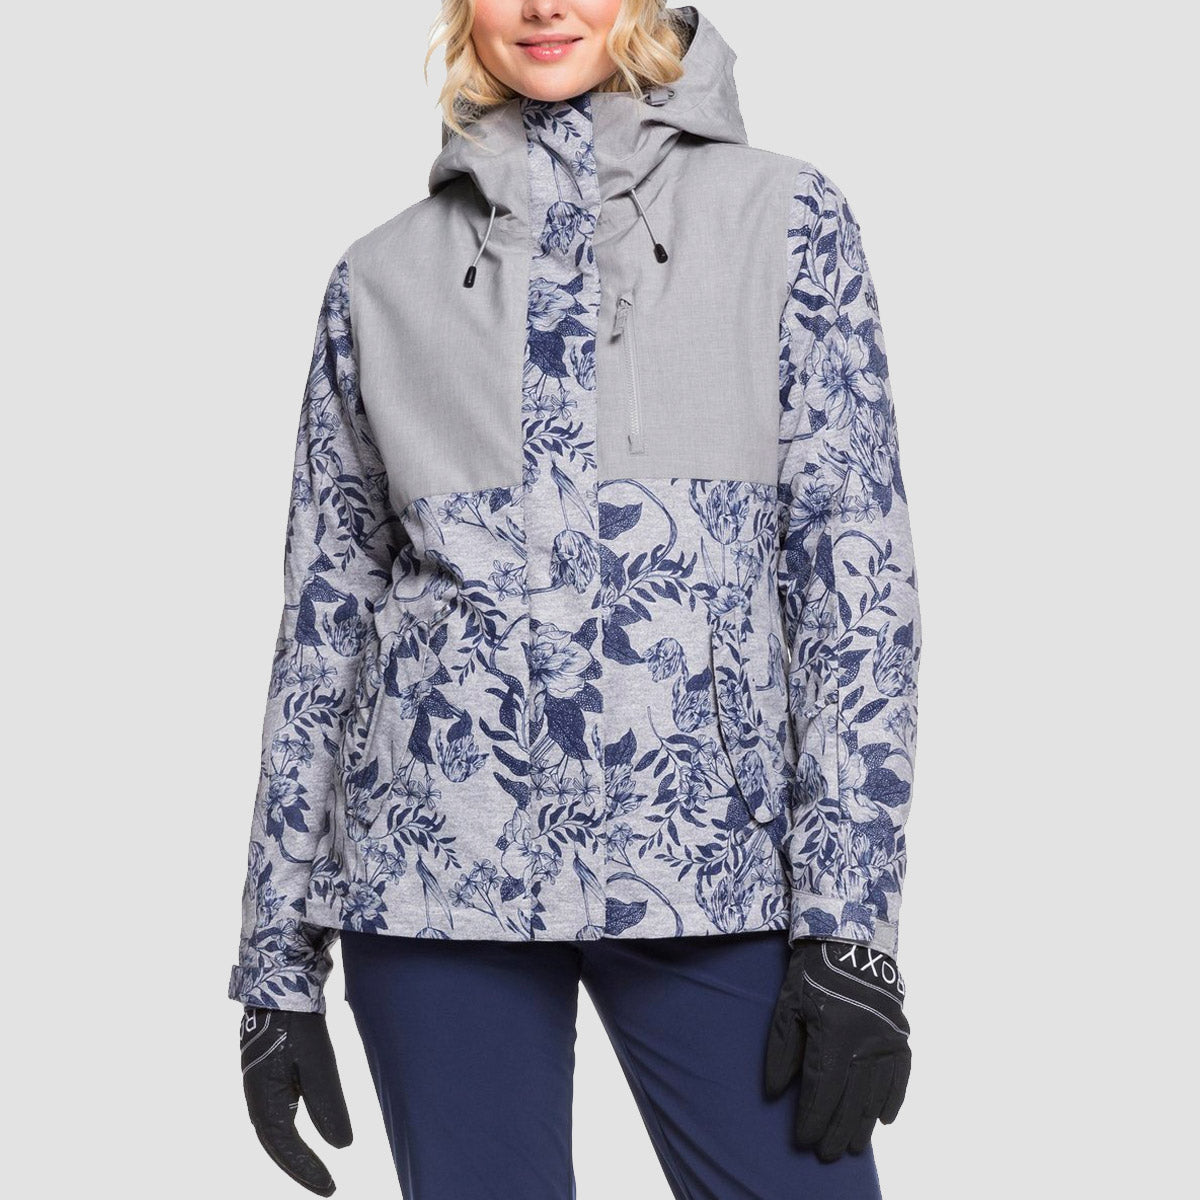 Roxy Jetty 3 in 1 Snow Jacket Heather Grey Botanical Flowers - Womens